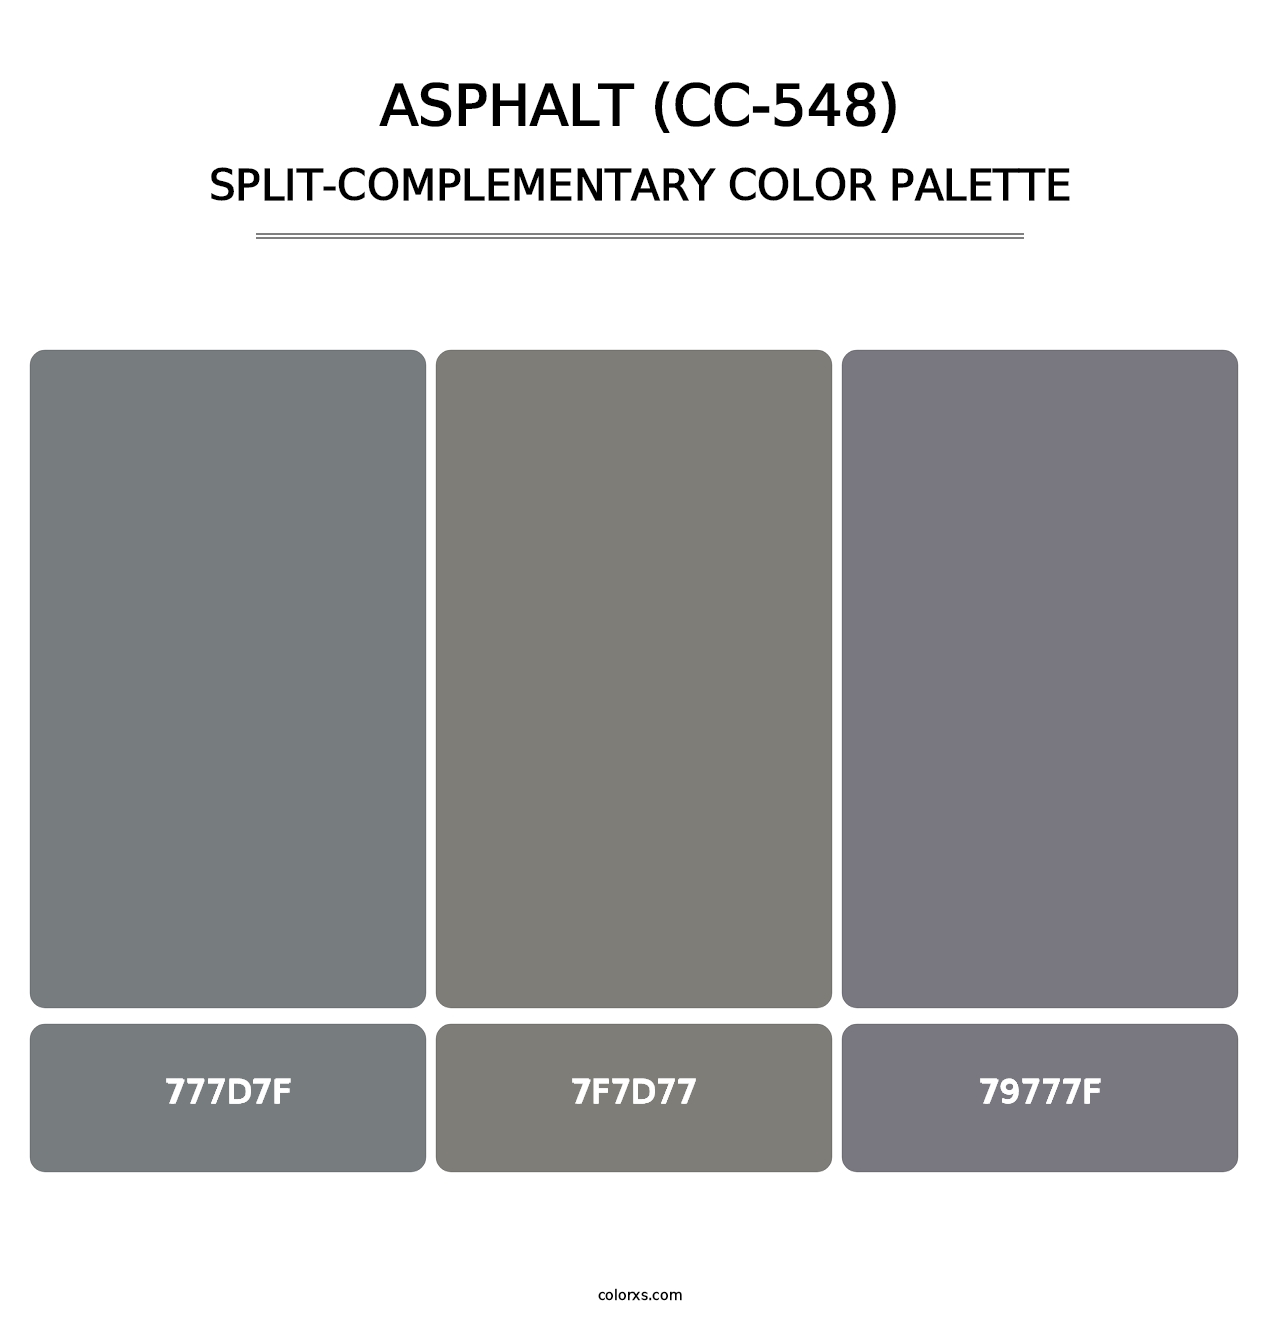 Asphalt (CC-548) - Split-Complementary Color Palette